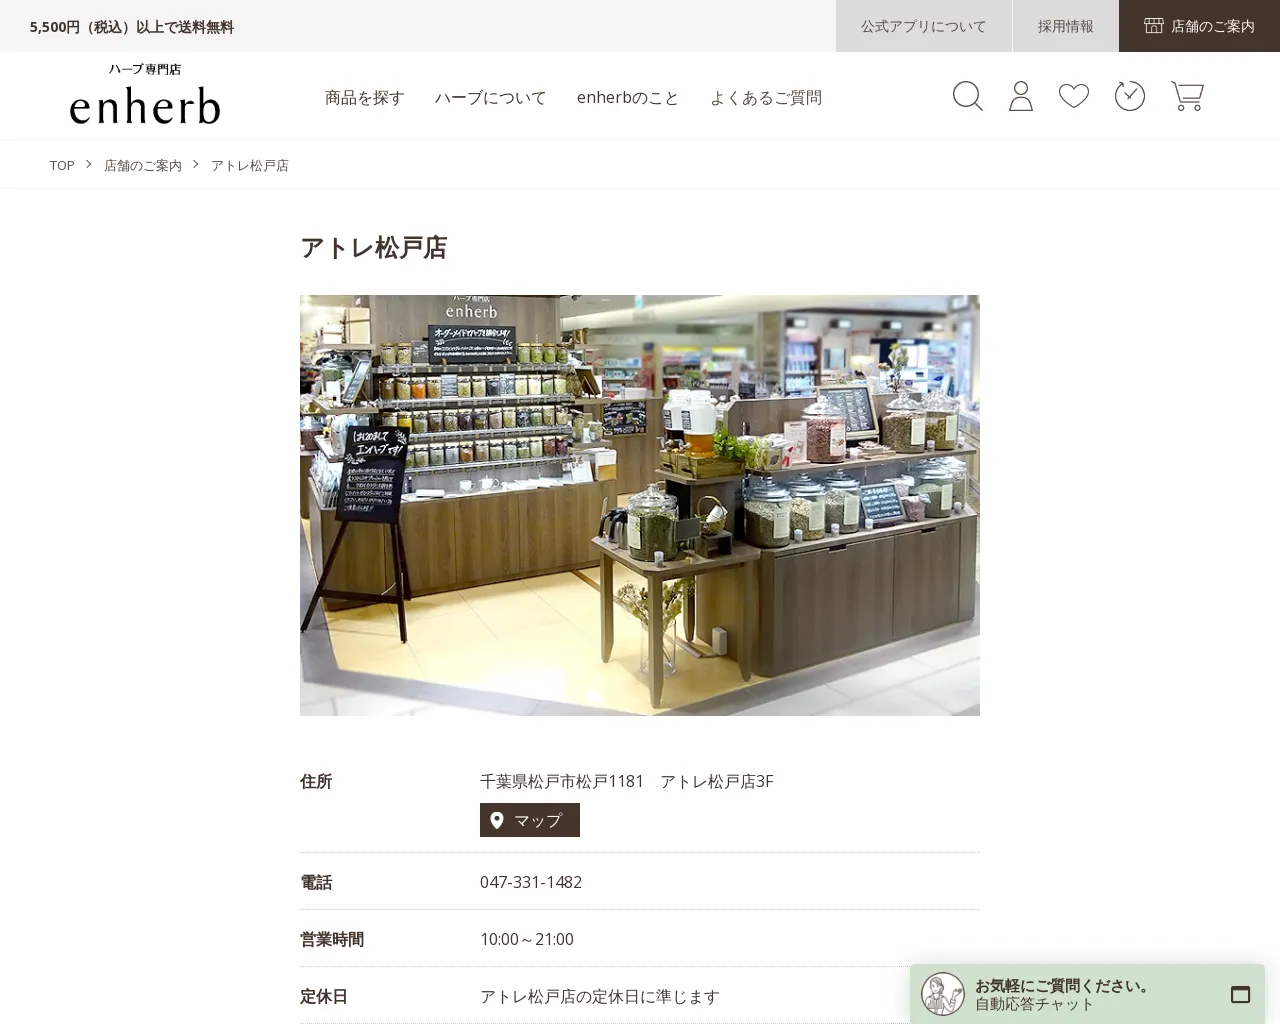 enherb アトレ松戸店 site